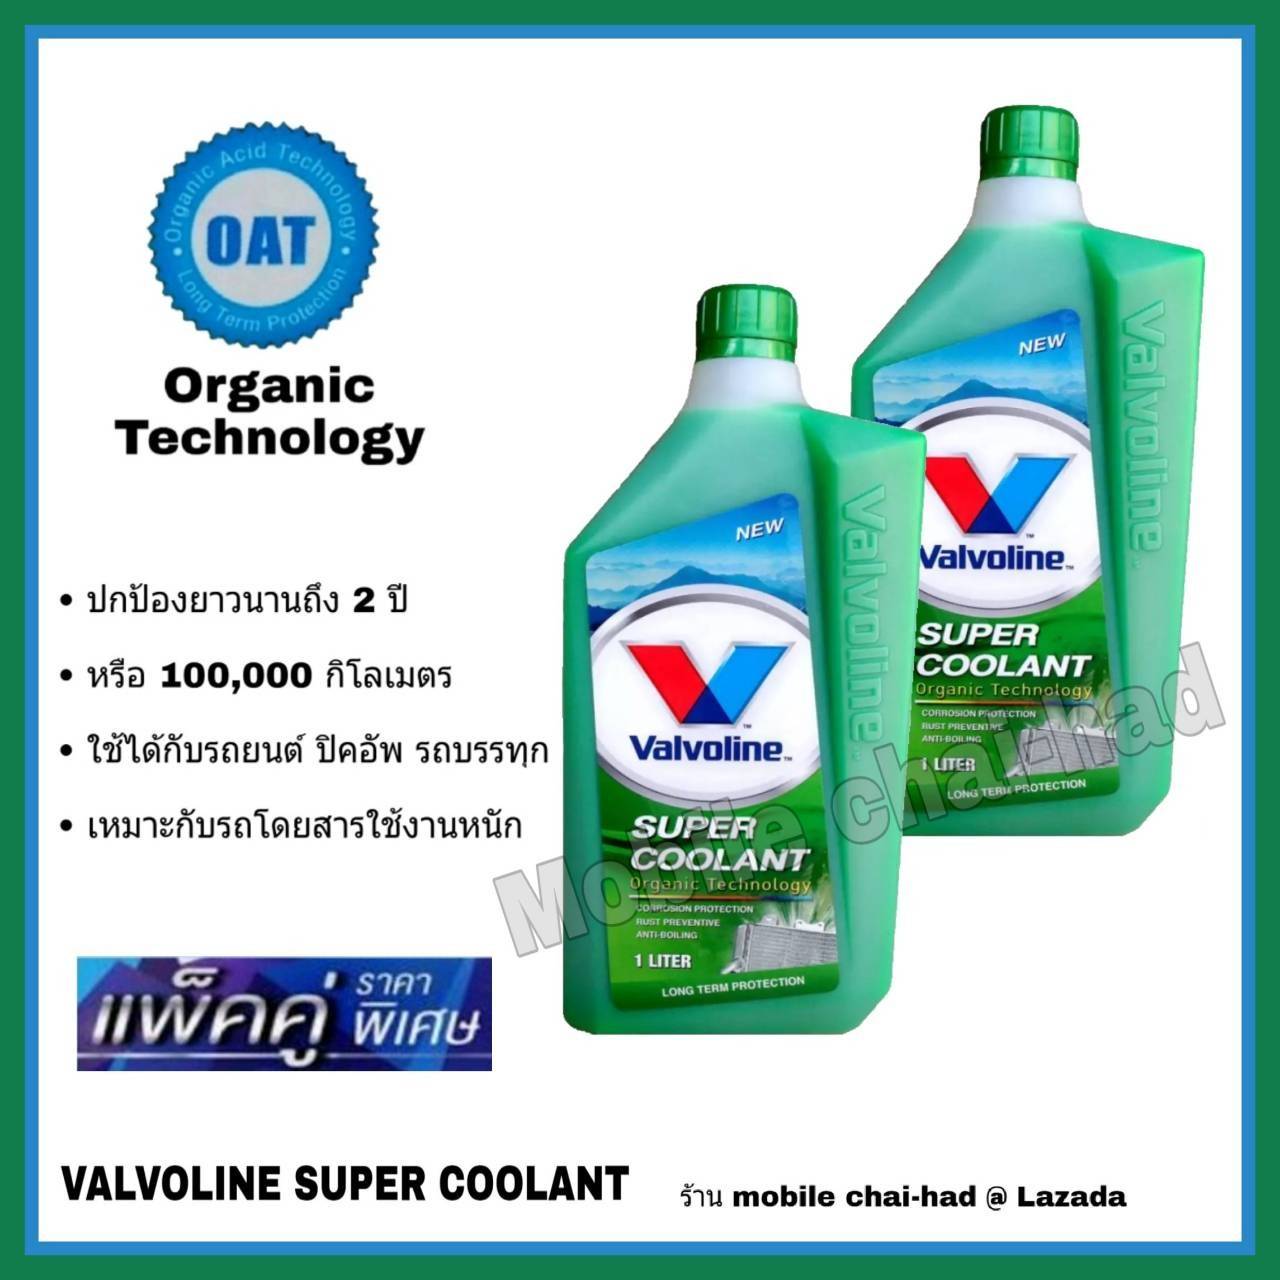 วาโวลีน ซุปเปอร์ คูลแลนท์ น้ำยารักษาหม้อน้ำ Valvoline Super Coolant น้ำยาหล่อเย็น น้ำยาหม้อน้ำ สีเขียว ขนาด 1 ลิตร 2 ขวด